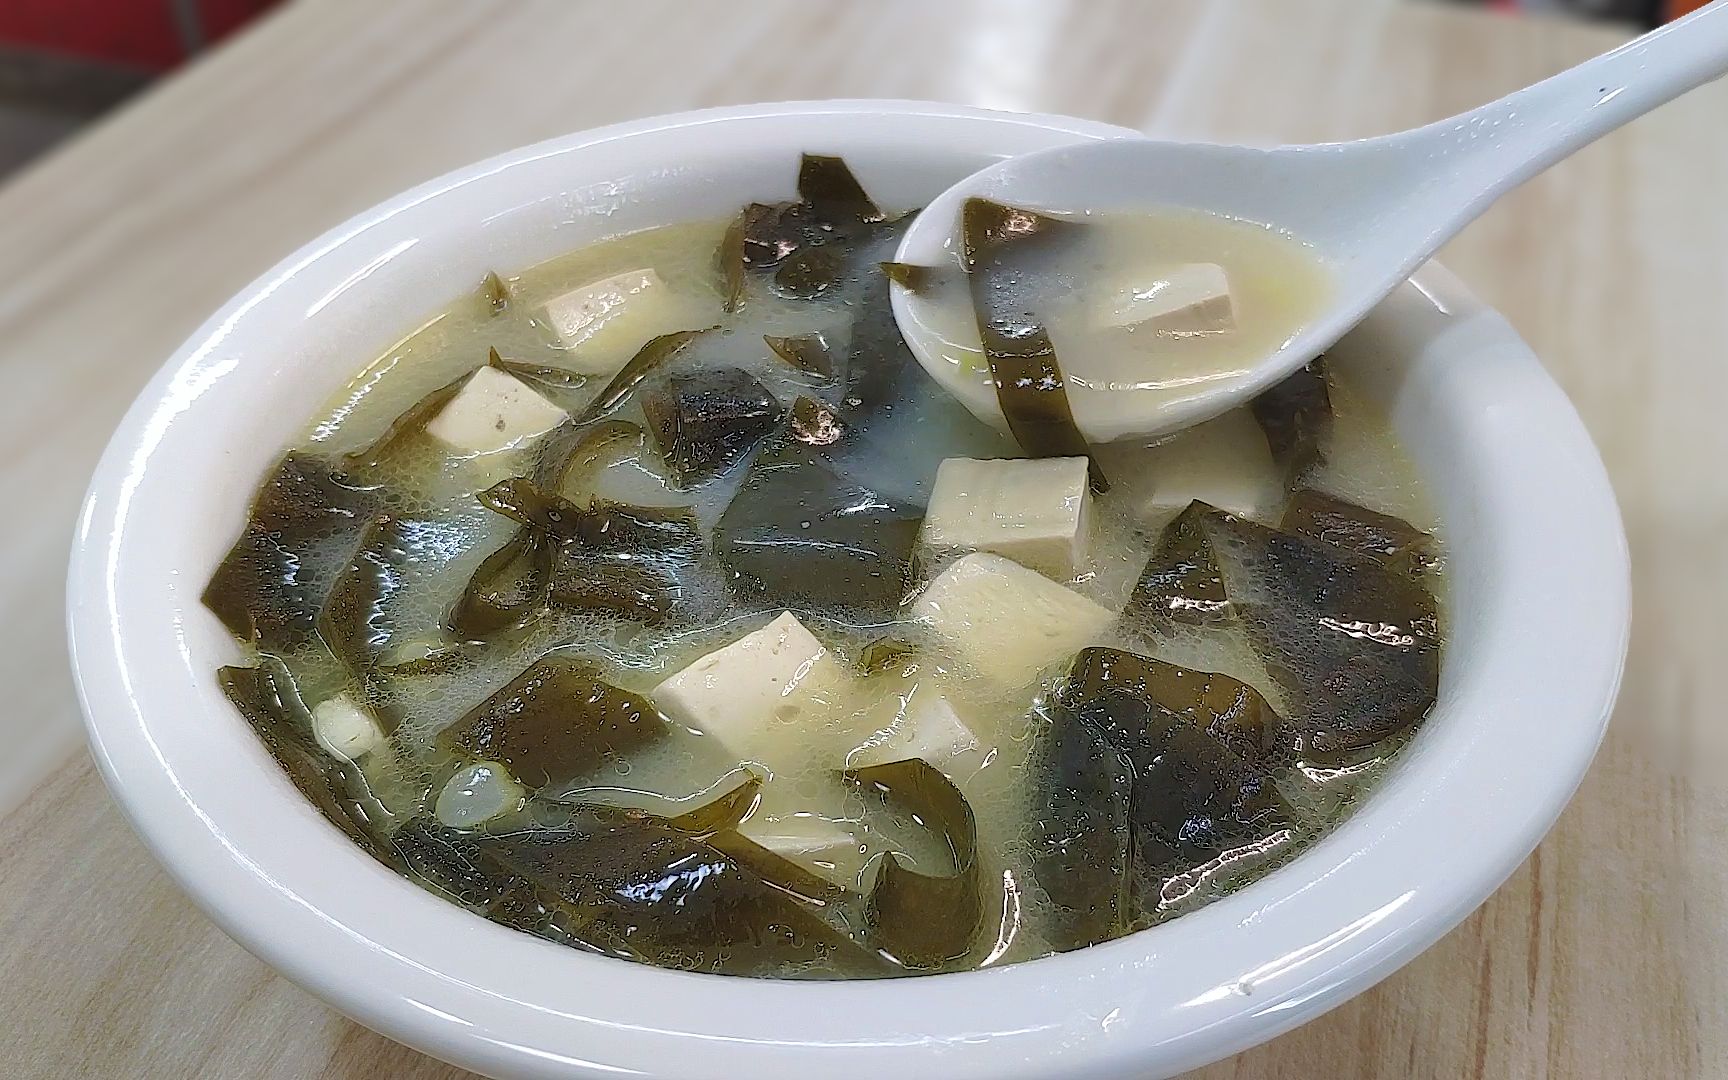 排骨海带豆腐汤,排骨海带豆腐汤的家常做法 - 美食杰排骨海带豆腐汤做法大全